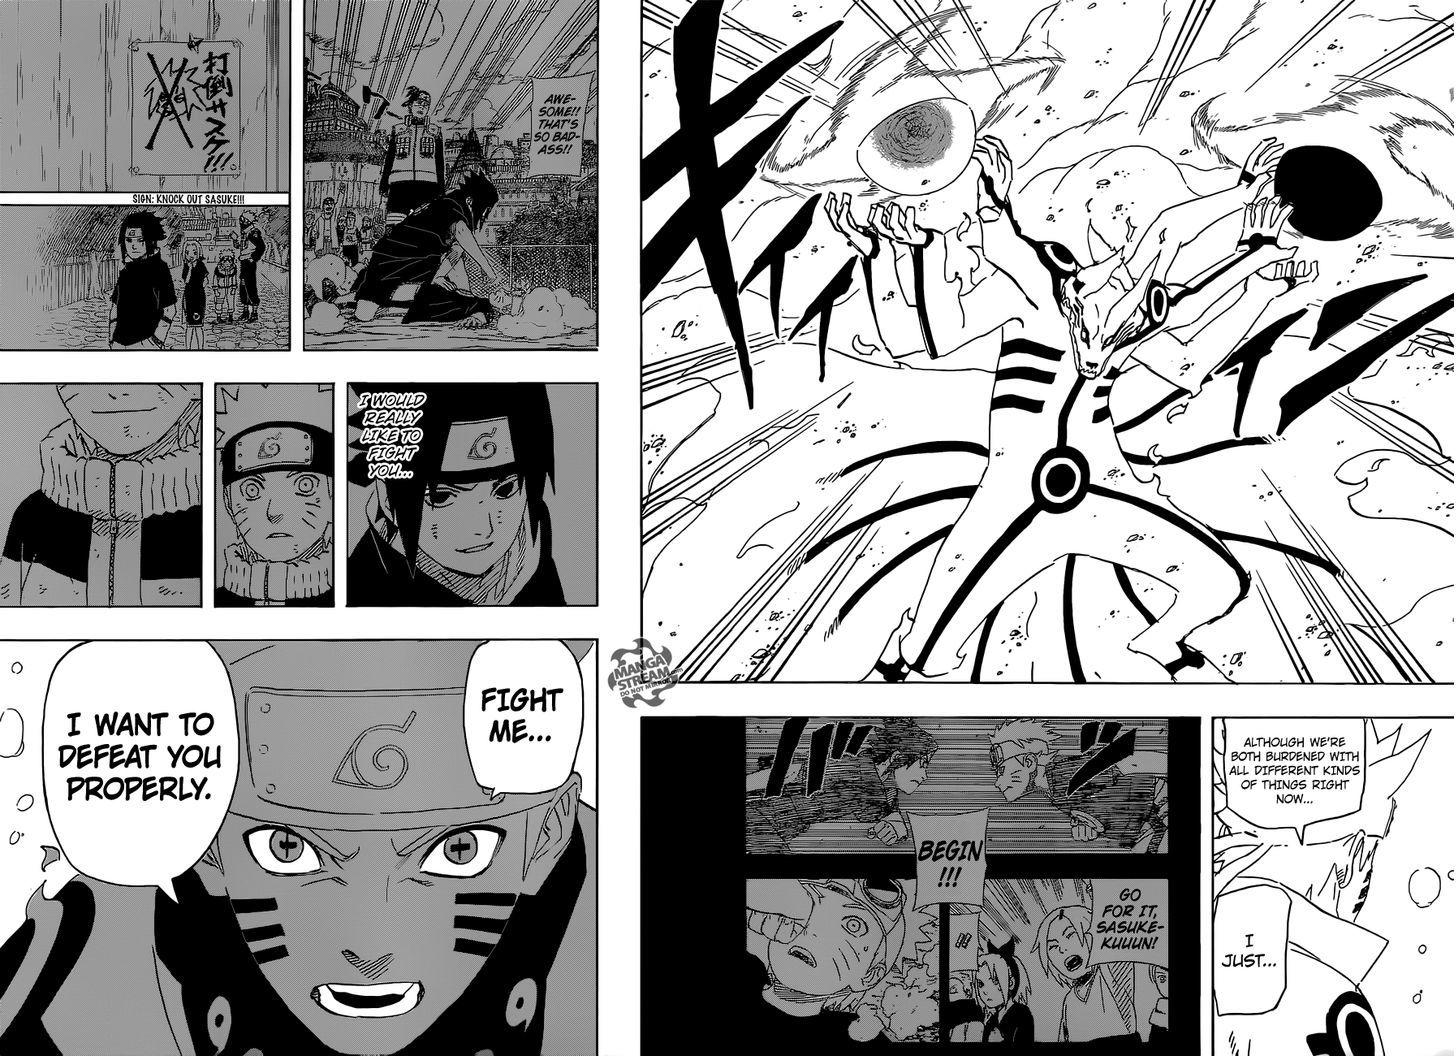 Vol.72 Chapter 696 – Naruto and Sasuke 3 | 15 page